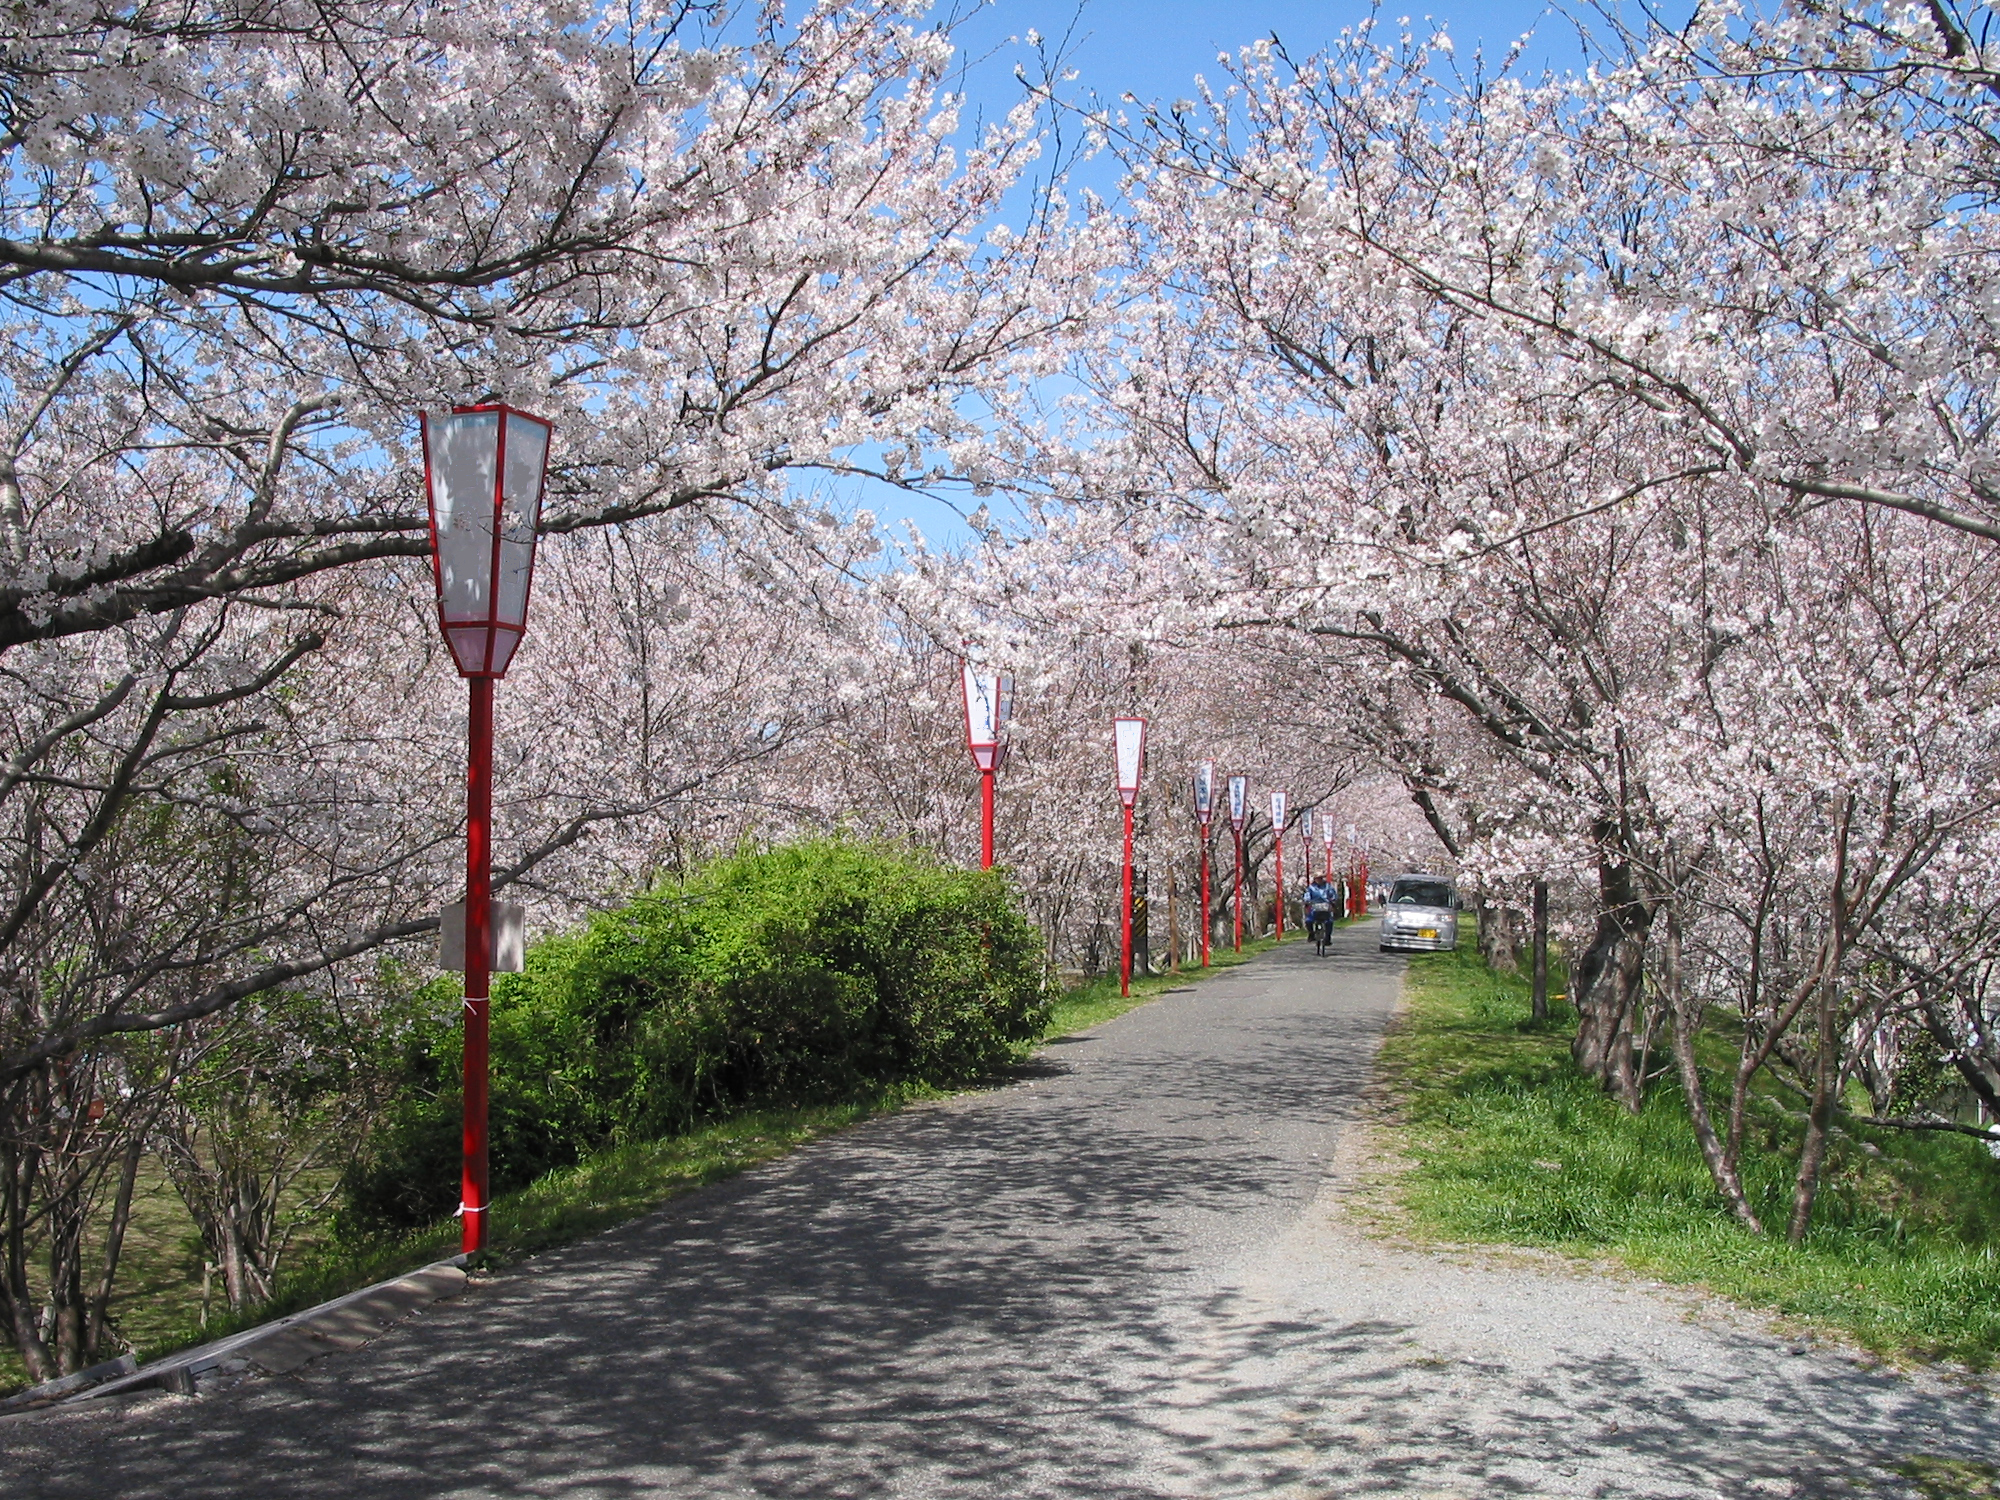 Cherry blossoms at Miyagawa-Tsutsumi